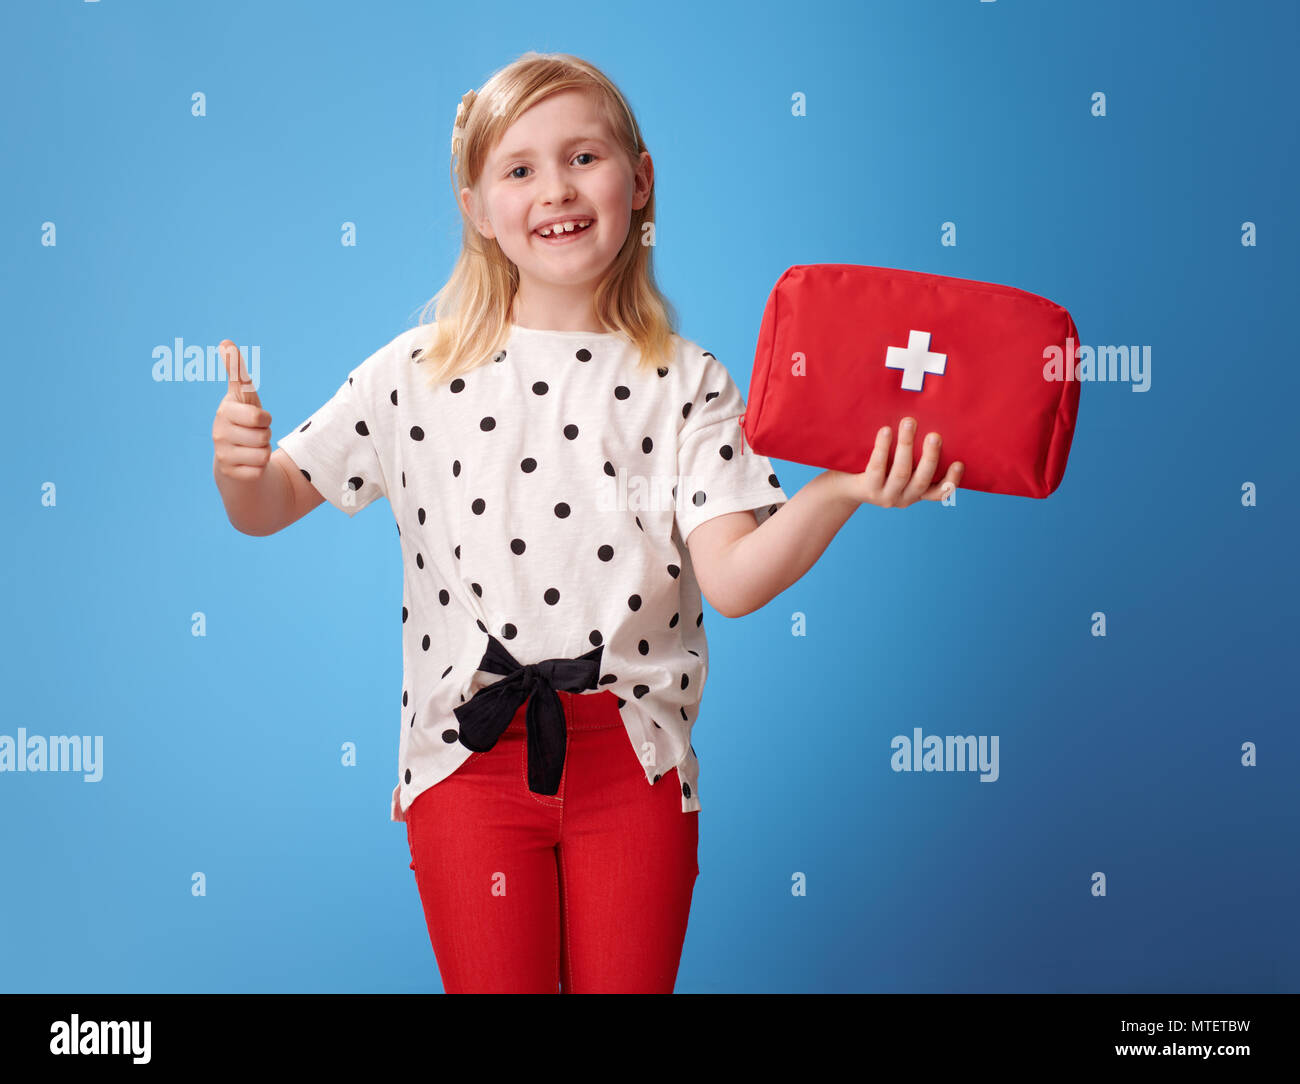 Lächelnd moderne Kind in roten Hosen, Erste-Hilfe-Set und Daumen oben auf Blau isoliert Stockfoto